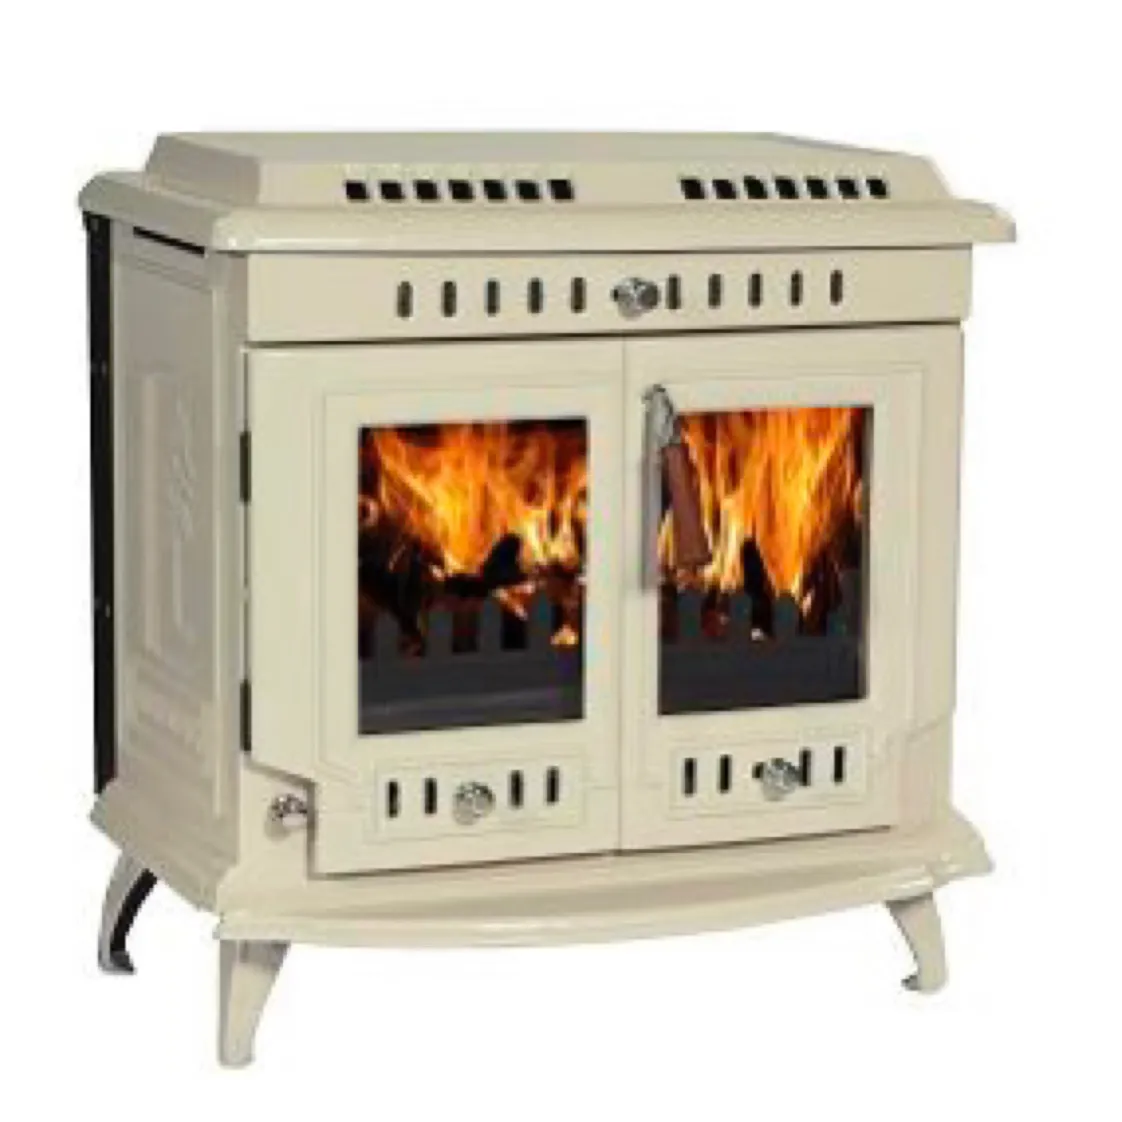 9kw automation Smokeless Insert Decorative Fireplace Burning Stove Cast Iron Burning Wood Stoves